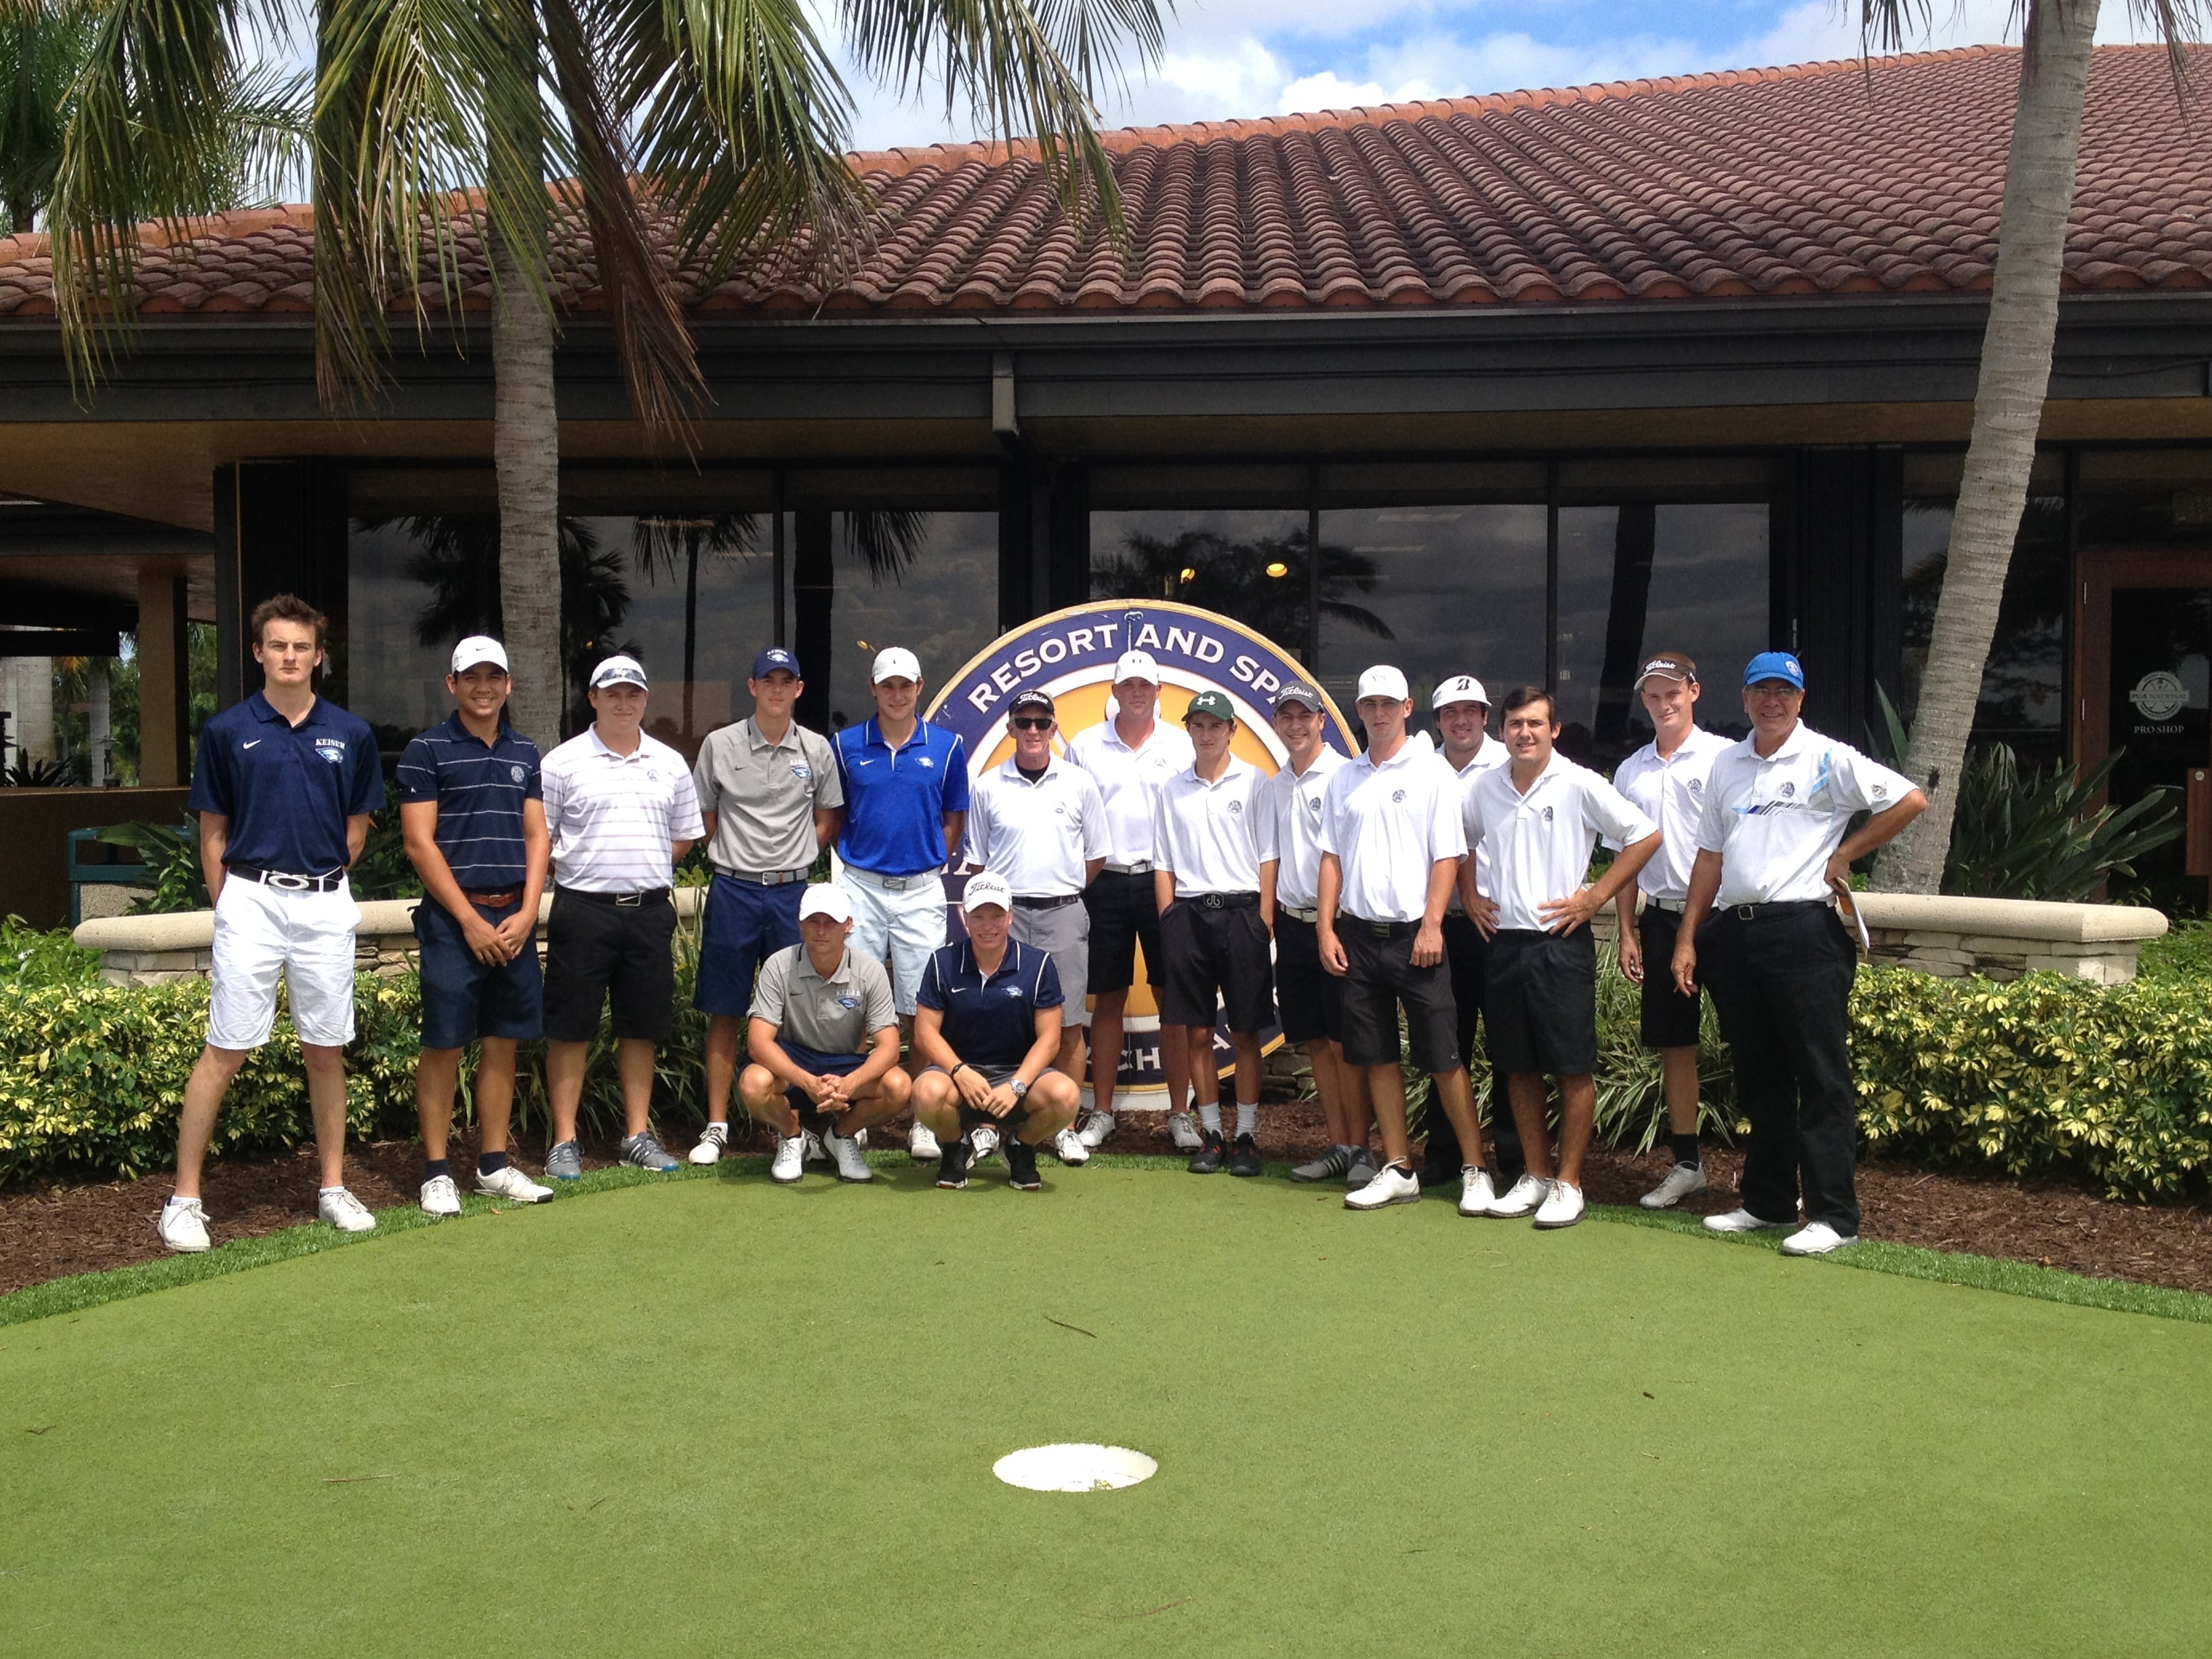 KU Flagship Golf Team vs. KU College of Golf Club Team